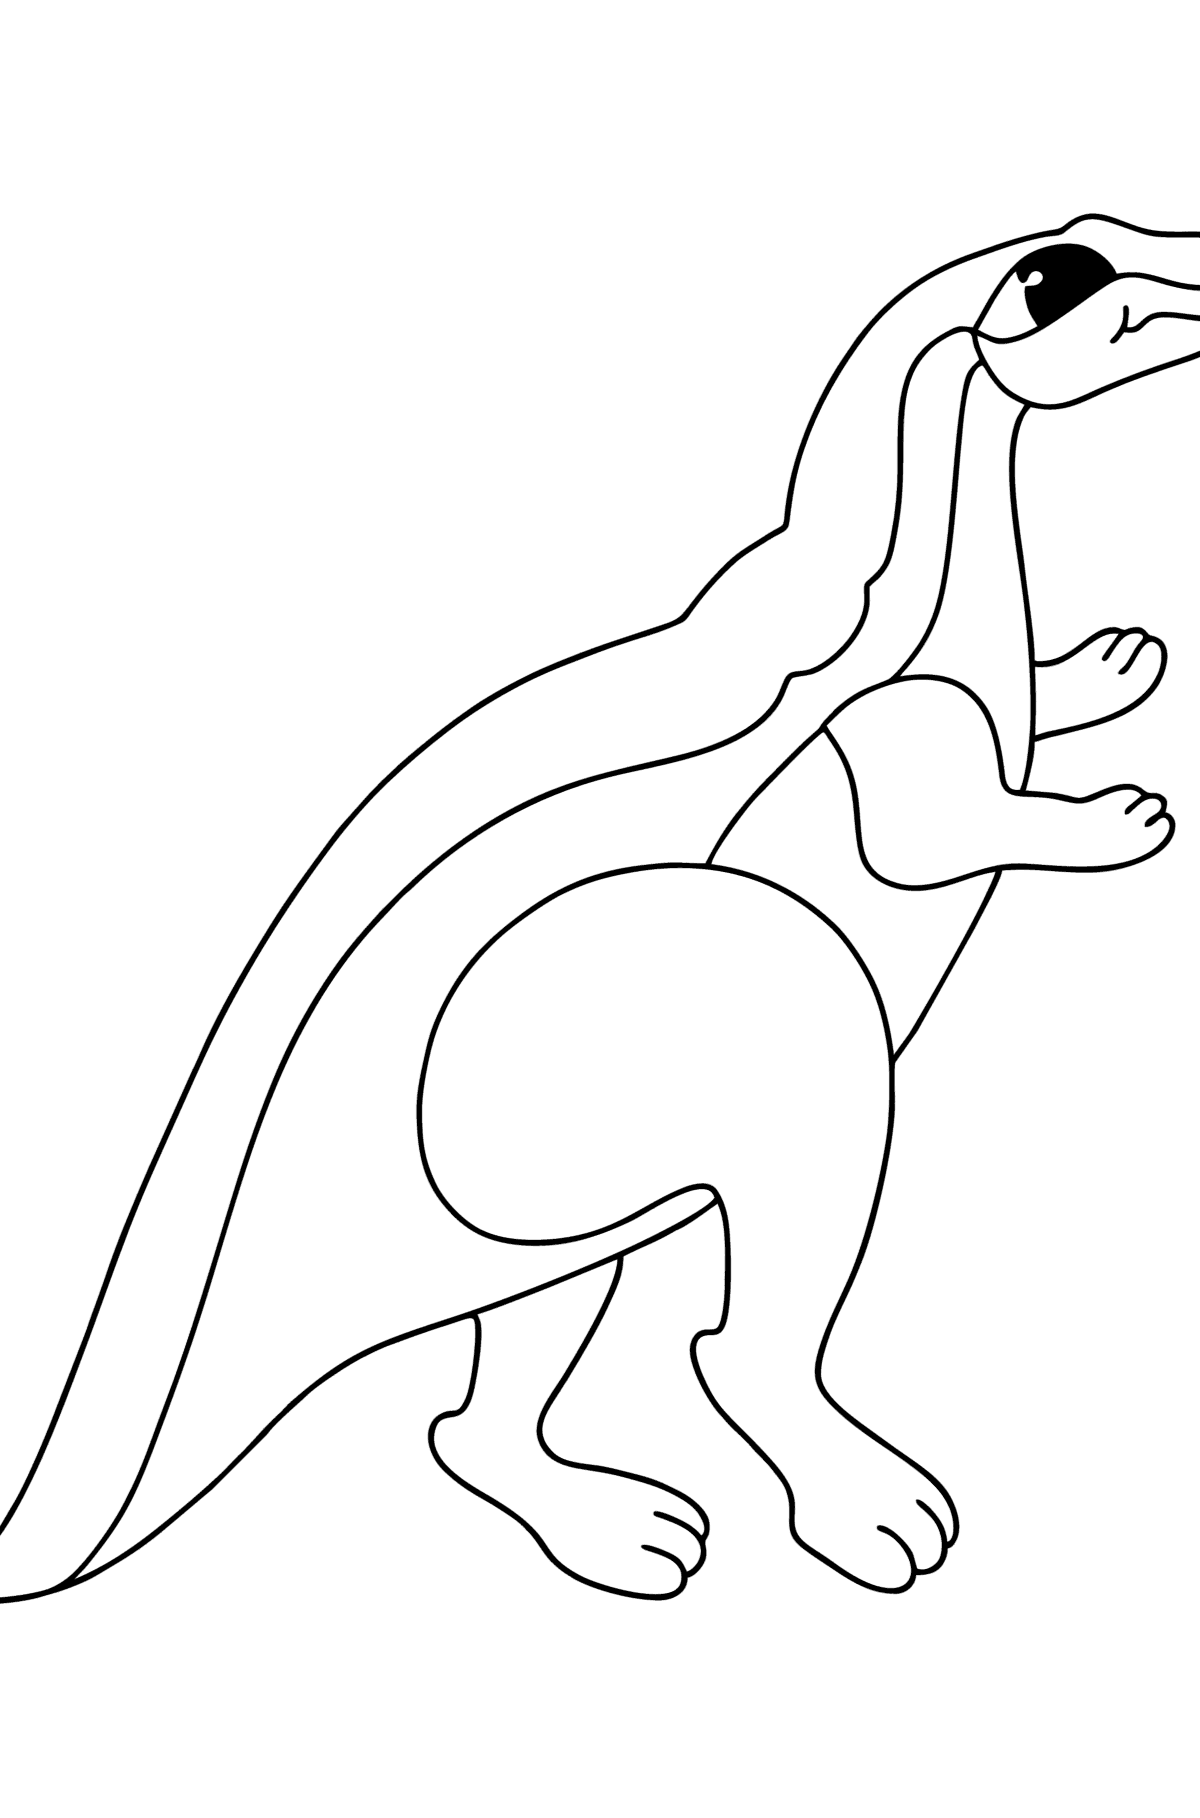 Desenho de Agilisaurus para colorir - Imagens para Colorir para Crianças